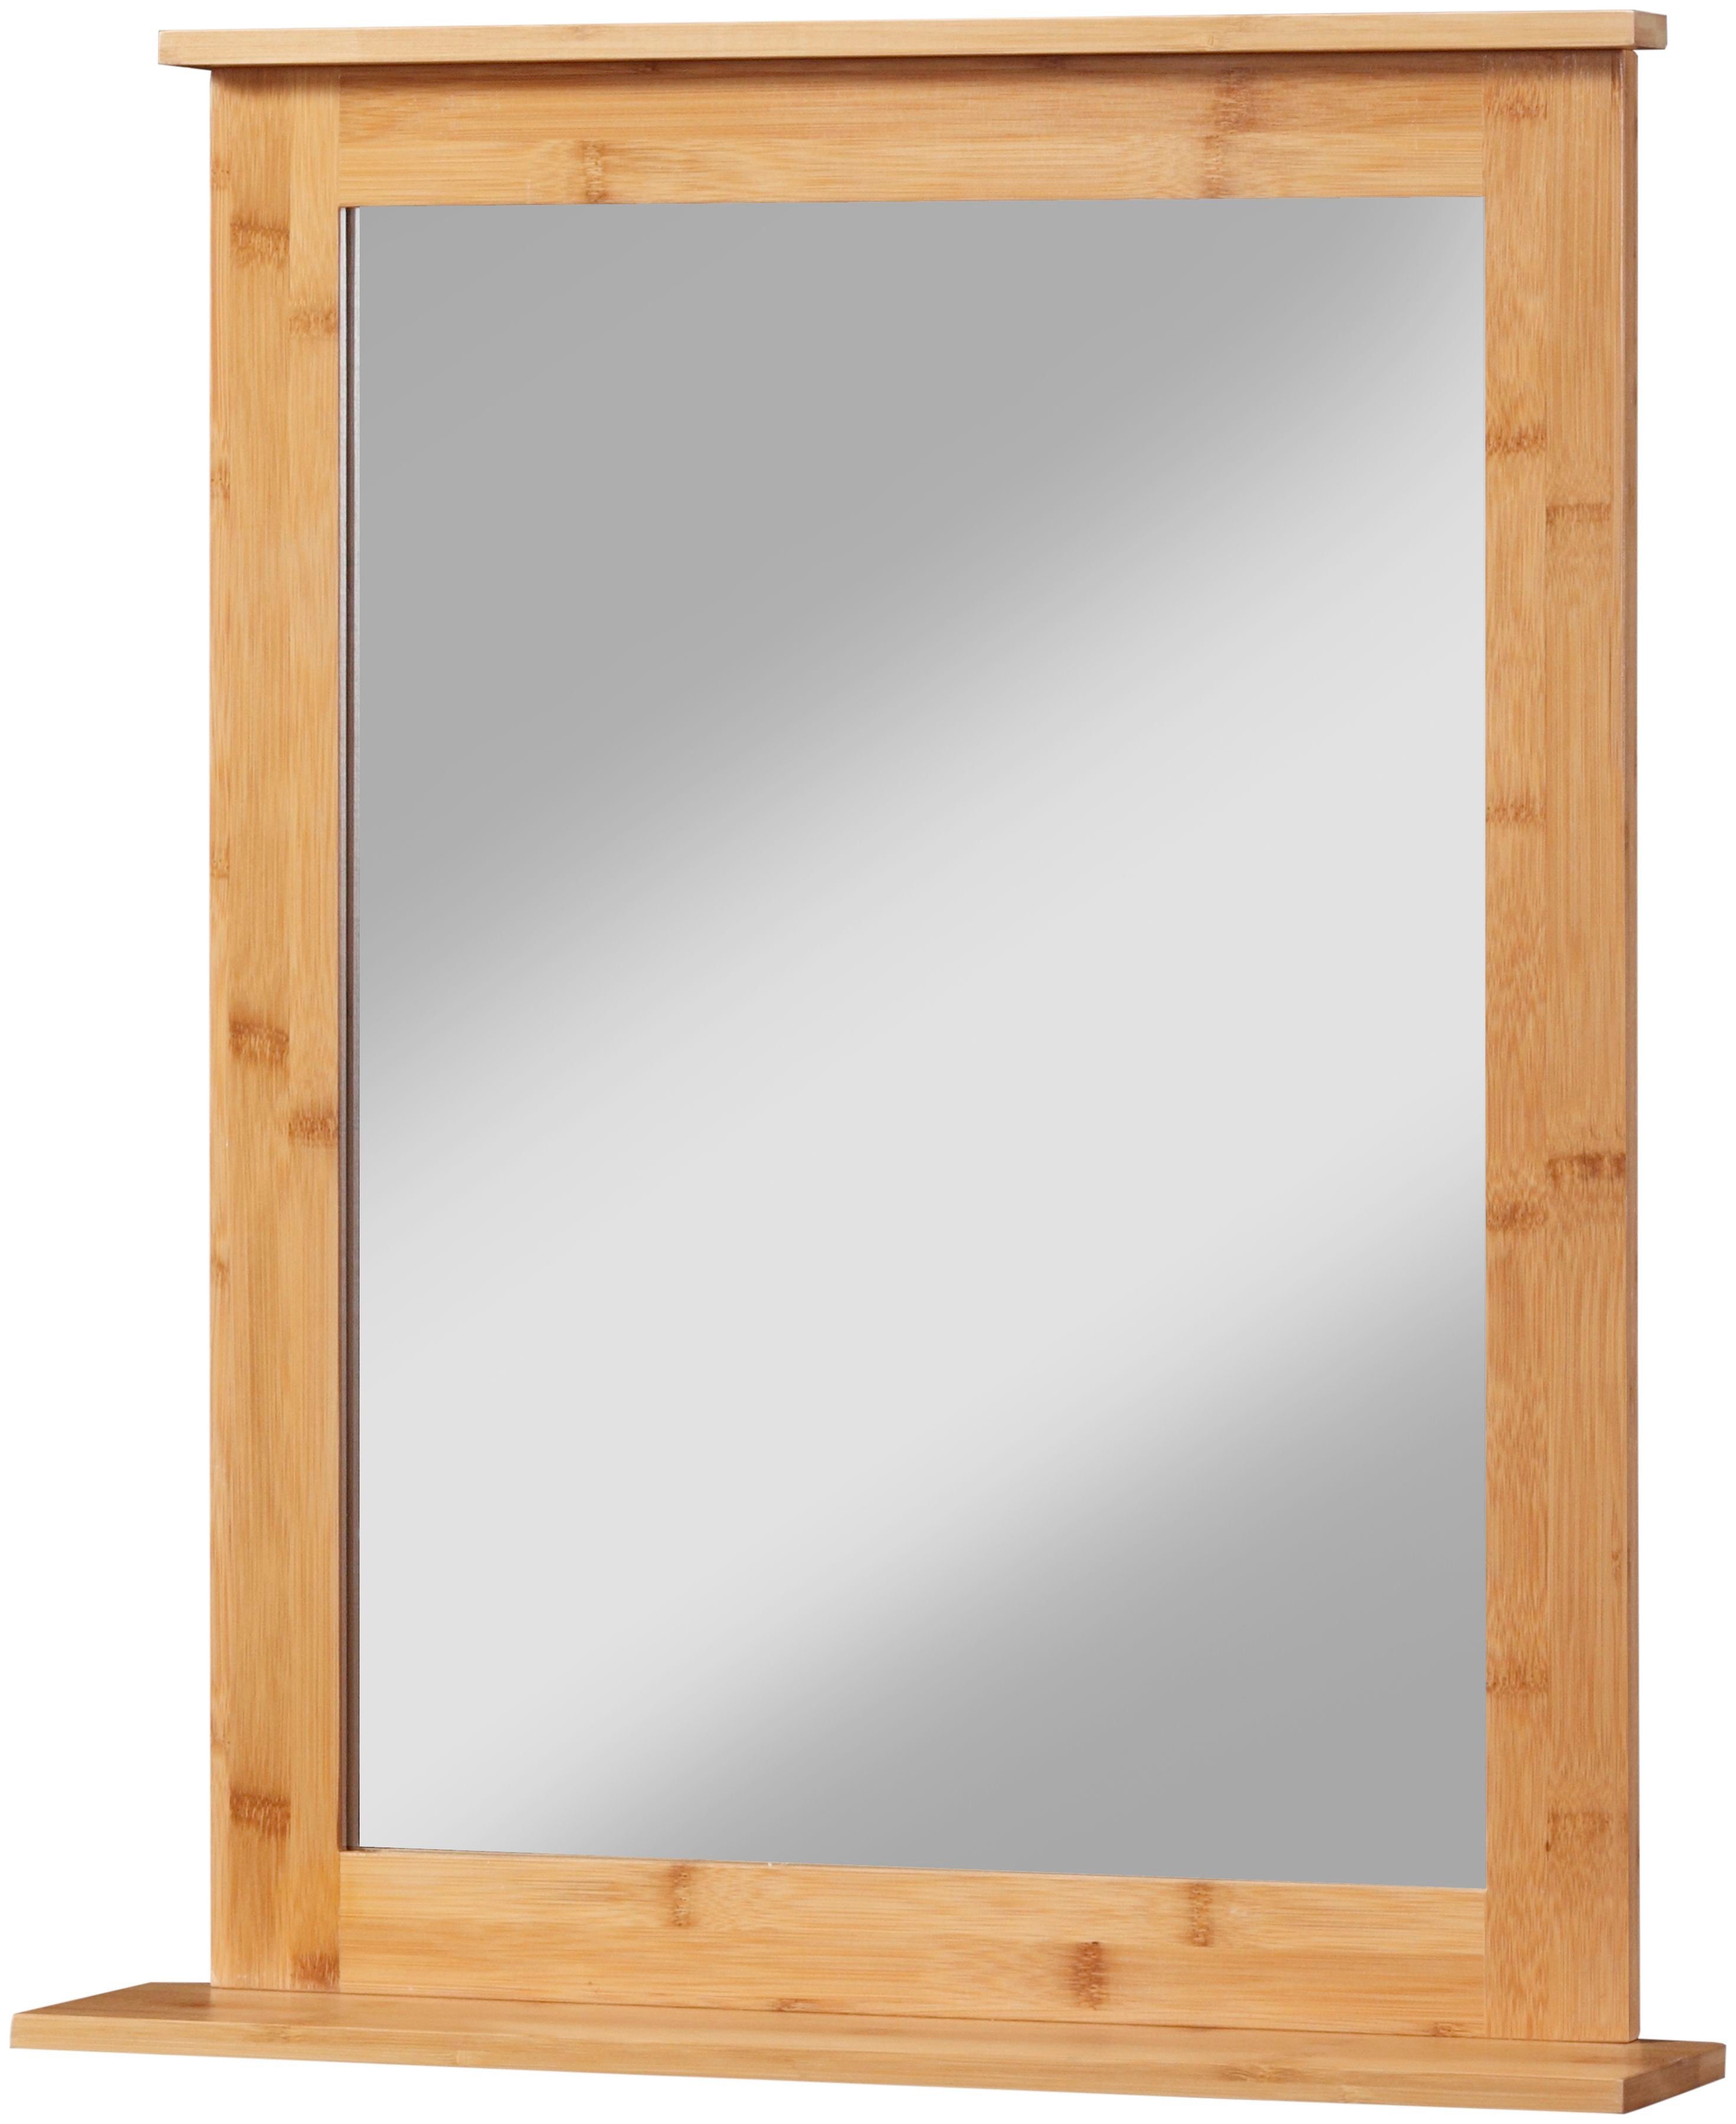 Badezimmerspiegel eckig Badspiegel Bambus welltime 58x70cm New, Bambus-Rahmen, mit